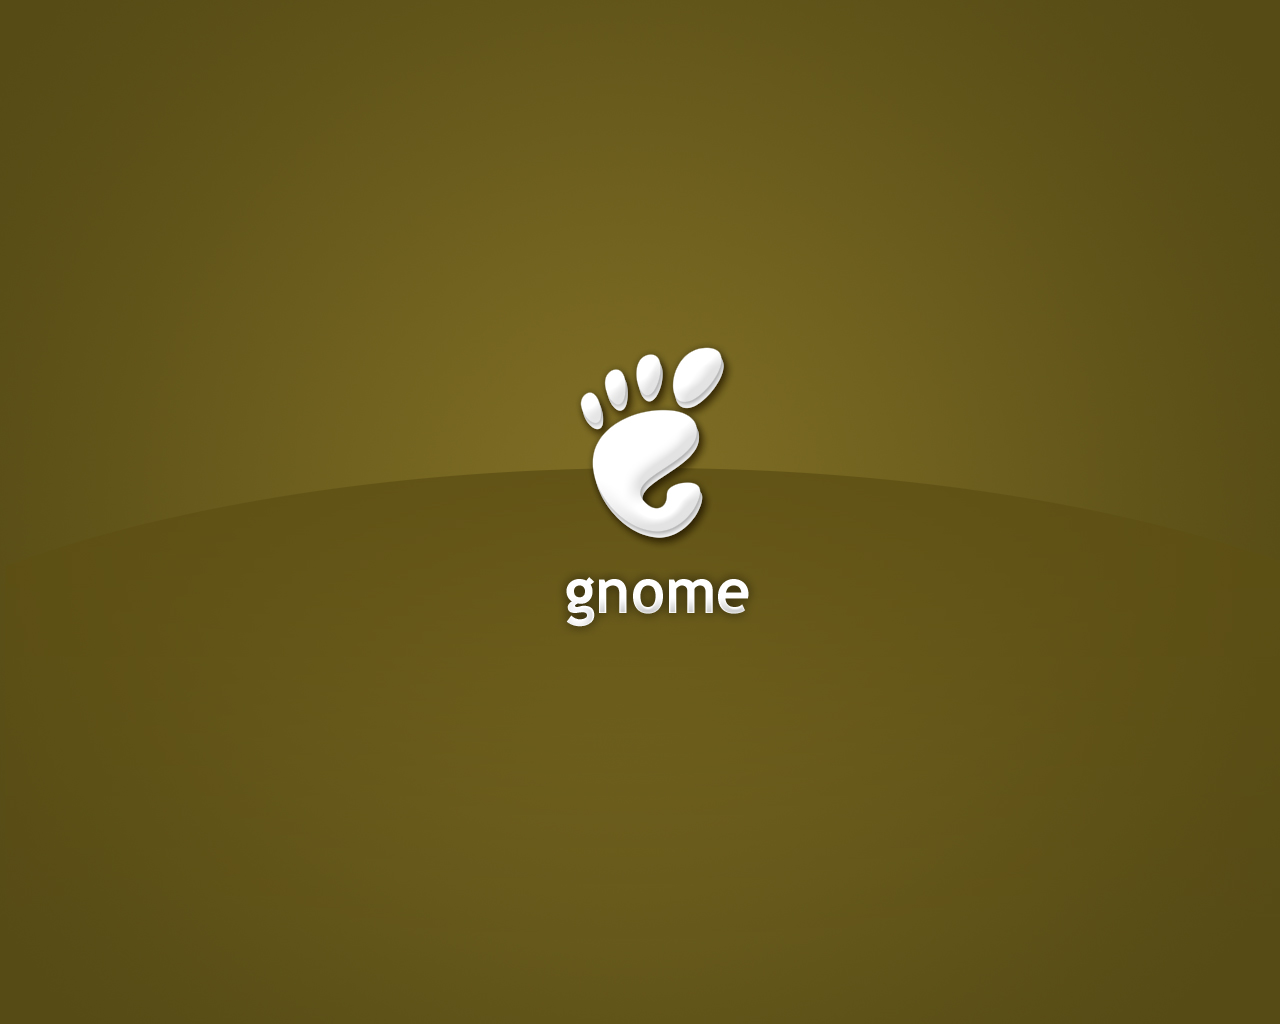 壁纸1280x10241280Gnome 1 16壁纸 Gnome 1280Gnome 第一辑壁纸 Gnome 1280Gnome 第一辑图片 Gnome 1280Gnome 第一辑素材 系统壁纸 系统图库 系统图片素材桌面壁纸